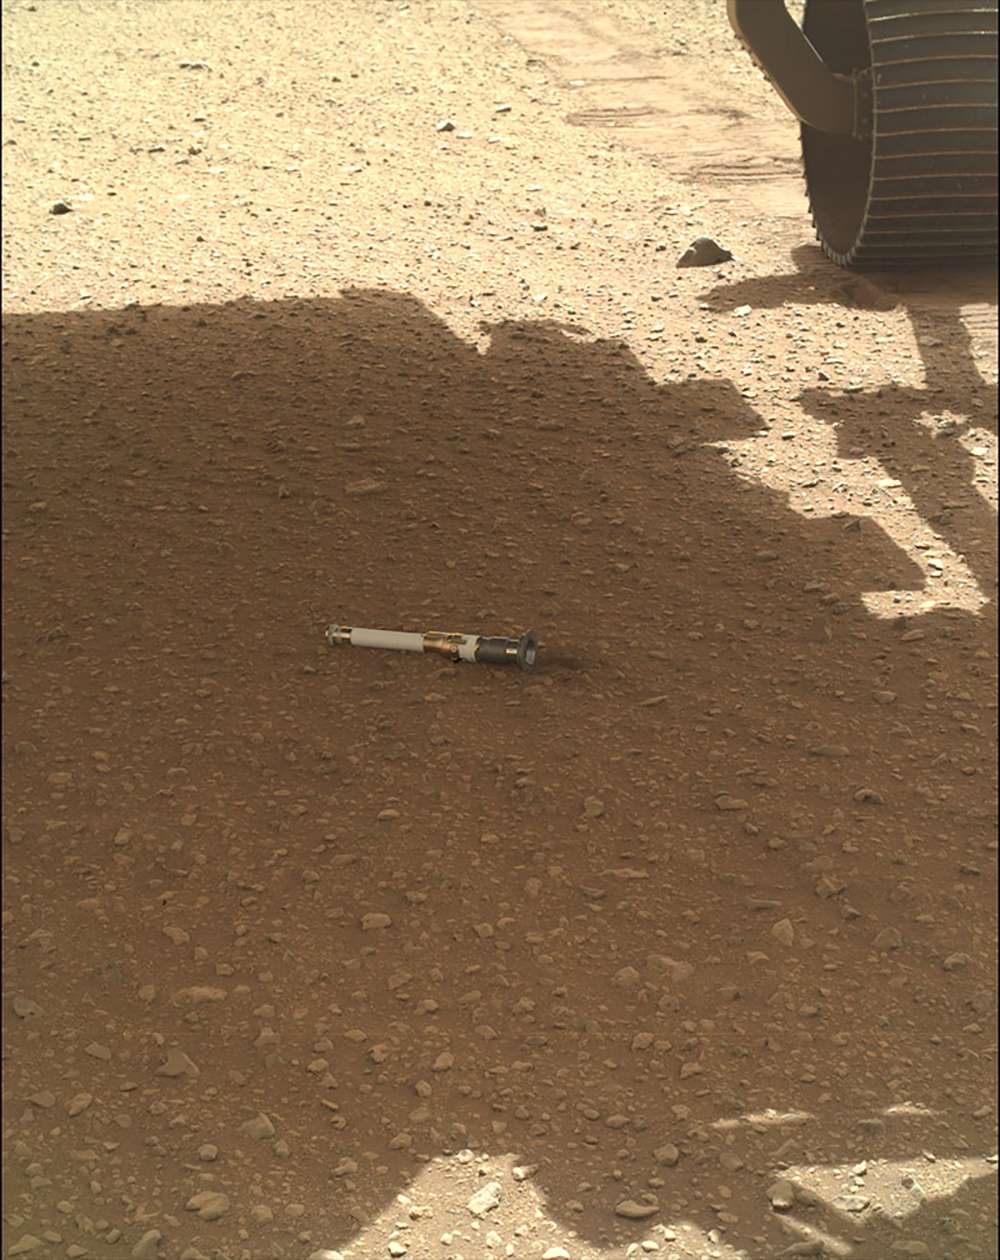 Ce petit tube en titane abrite le graal des scientifiques qui étudient la Planète rouge. Il renferme et protège des rayons UV plusieurs grammes d'échantillons de la surface de Mars, qu'a collectés le rover Perseverance. © Nasa